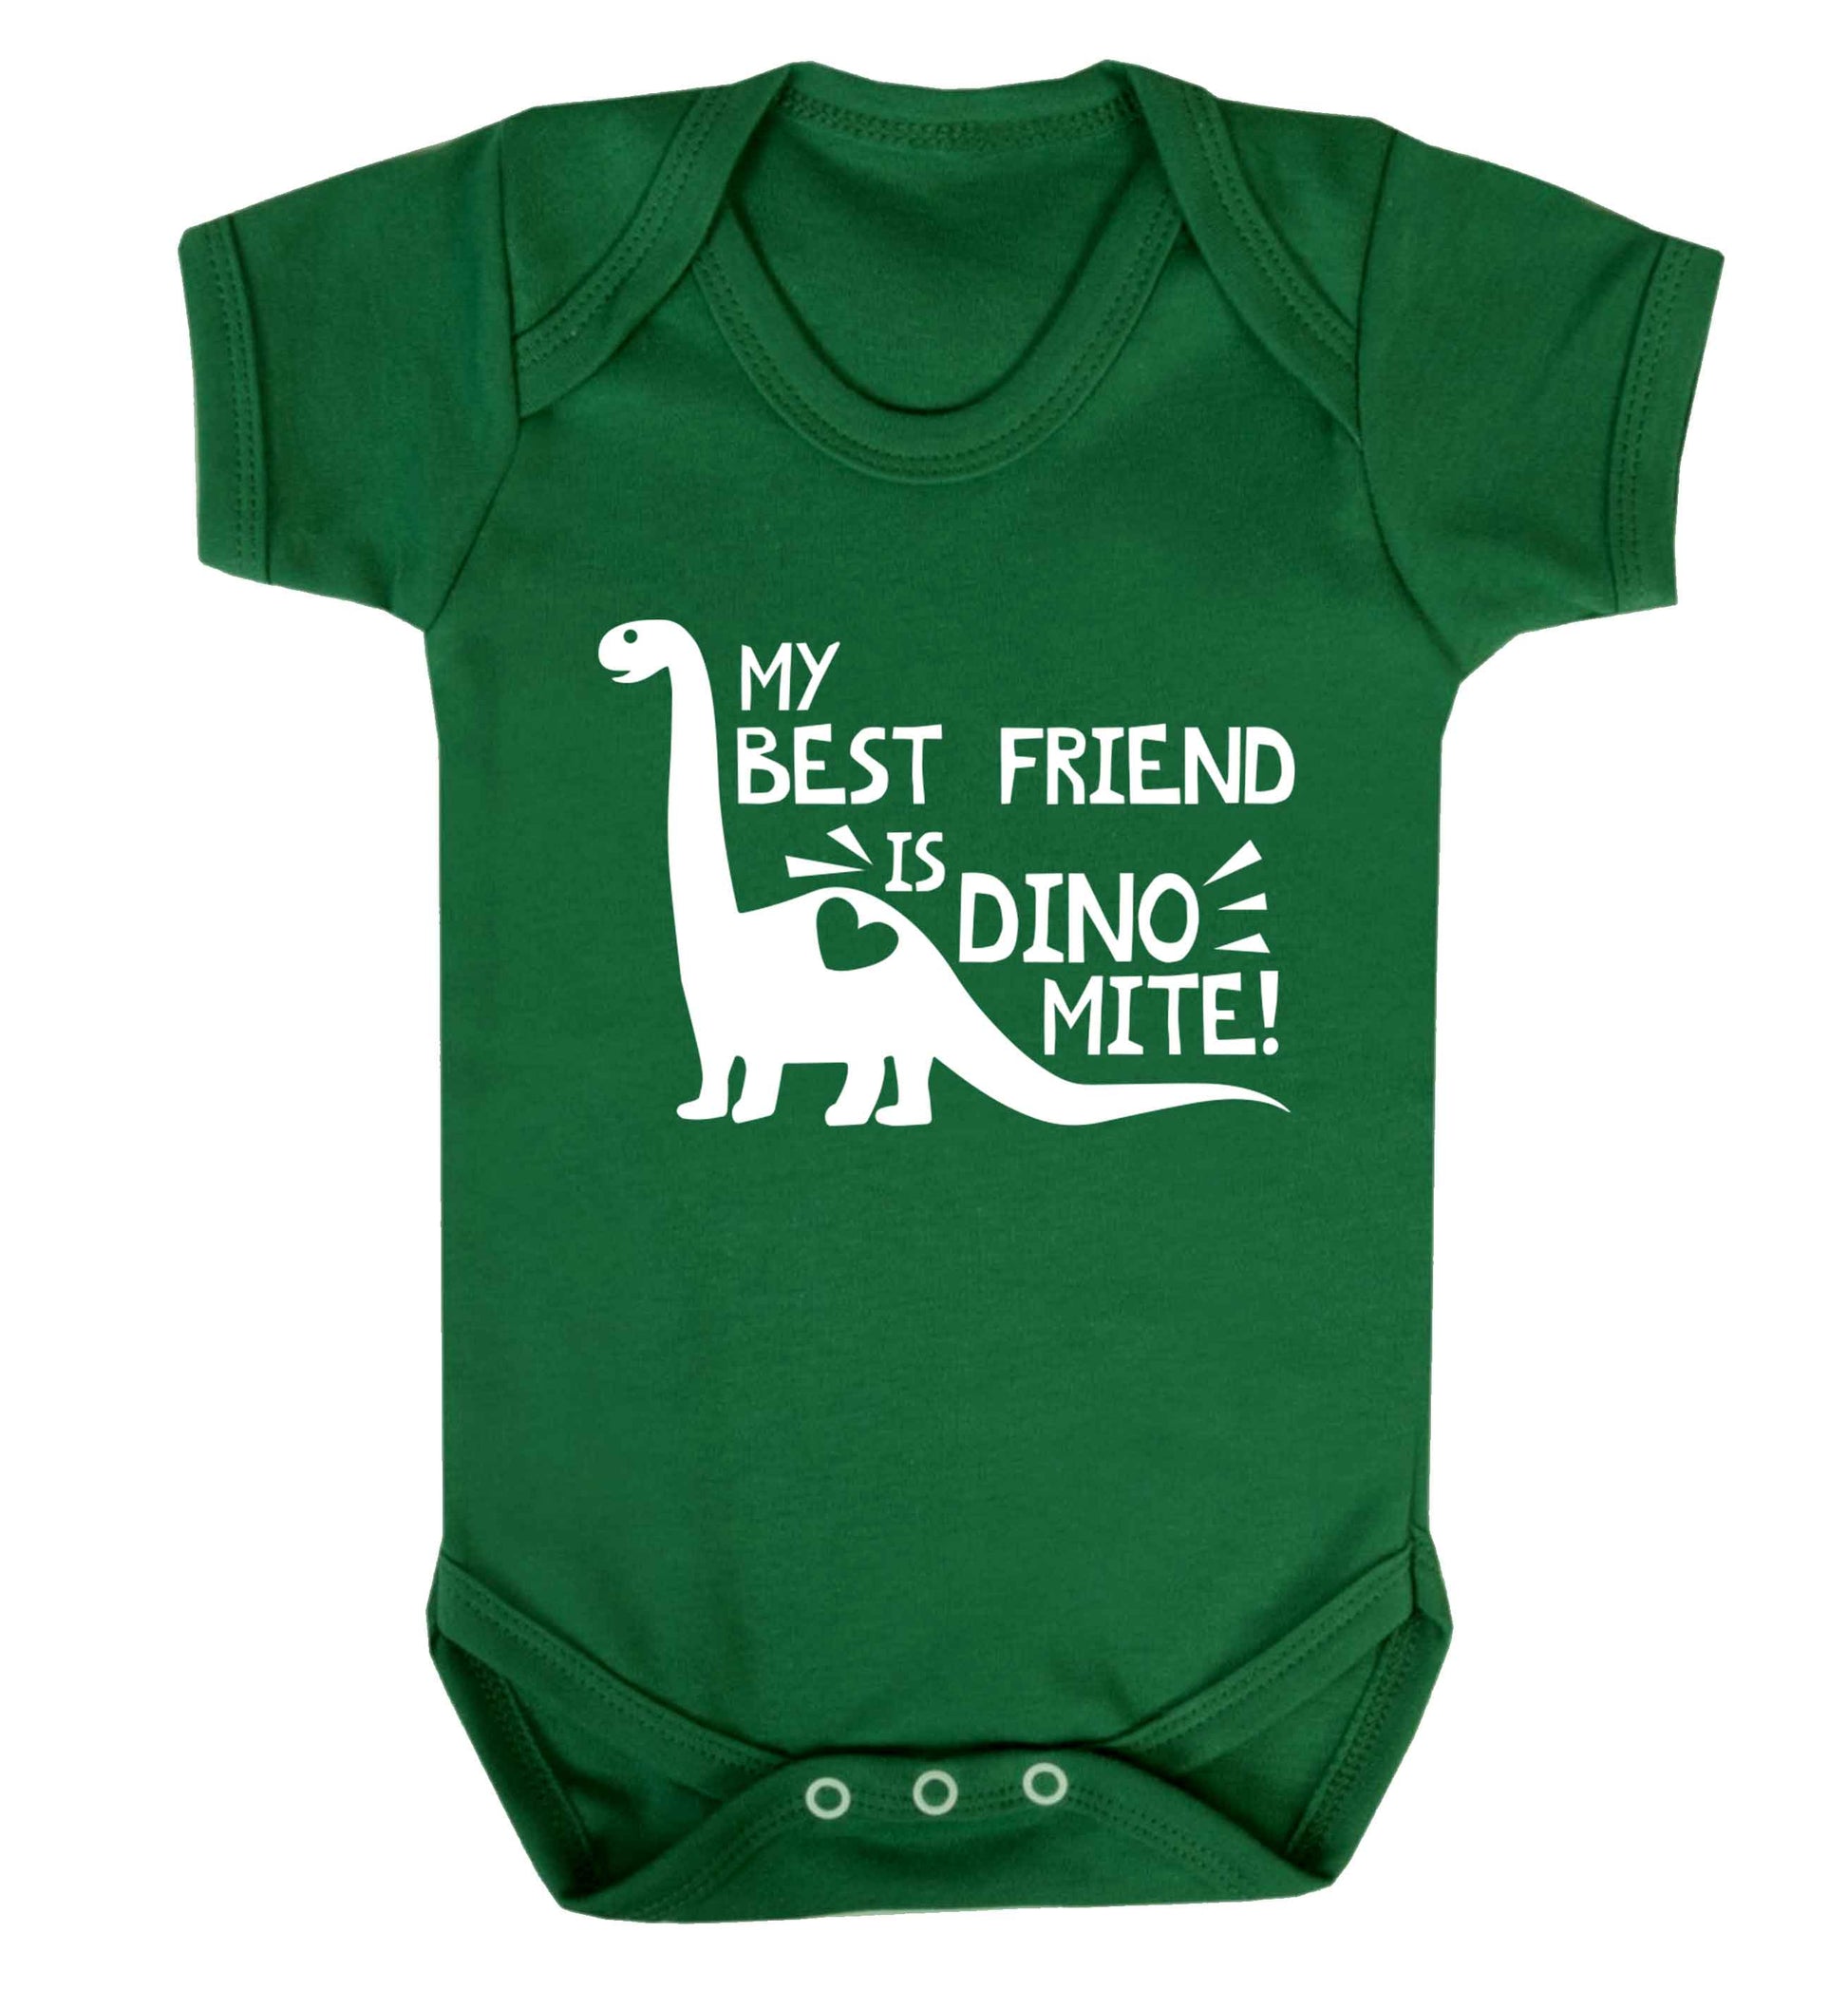 My best friend is dinomite! Baby Vest green 18-24 months